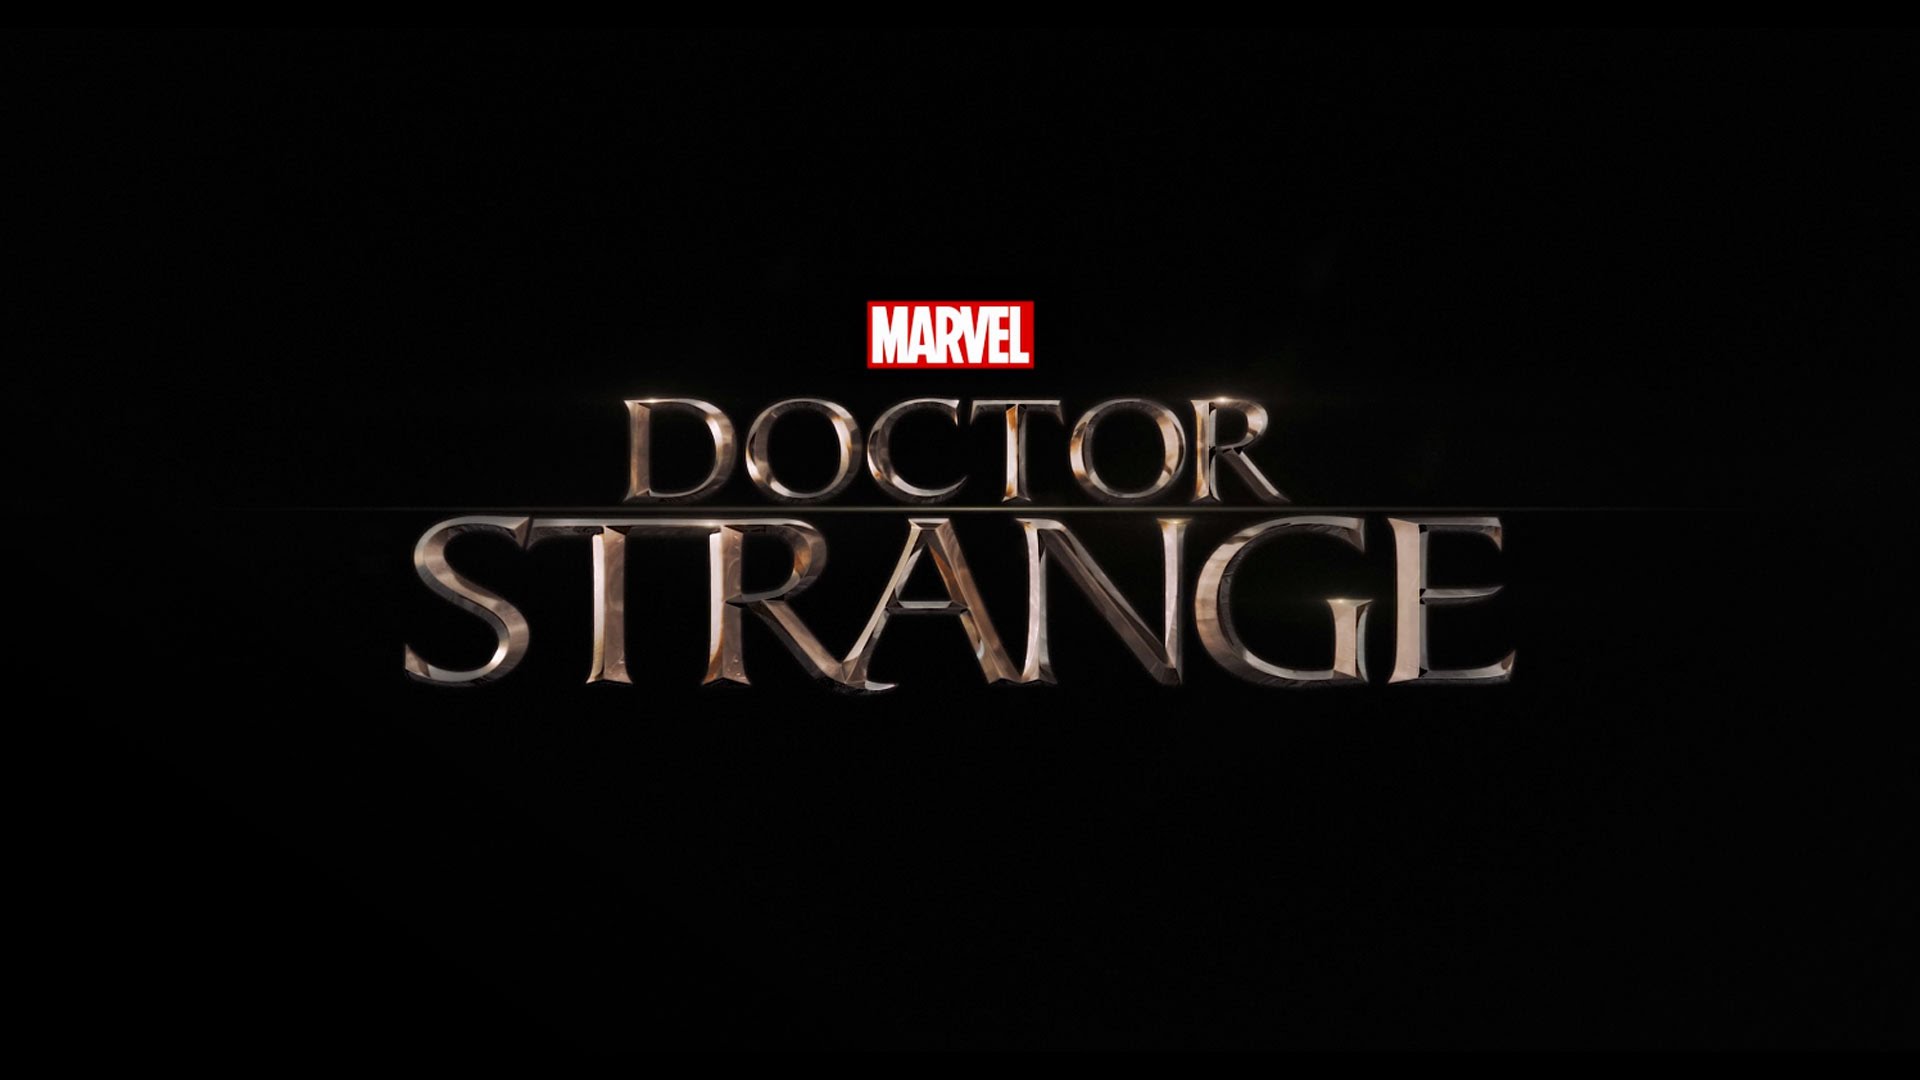 Marvel Studios & IMAX Offers Fans A Sneak Peek At “Doctor Strange”